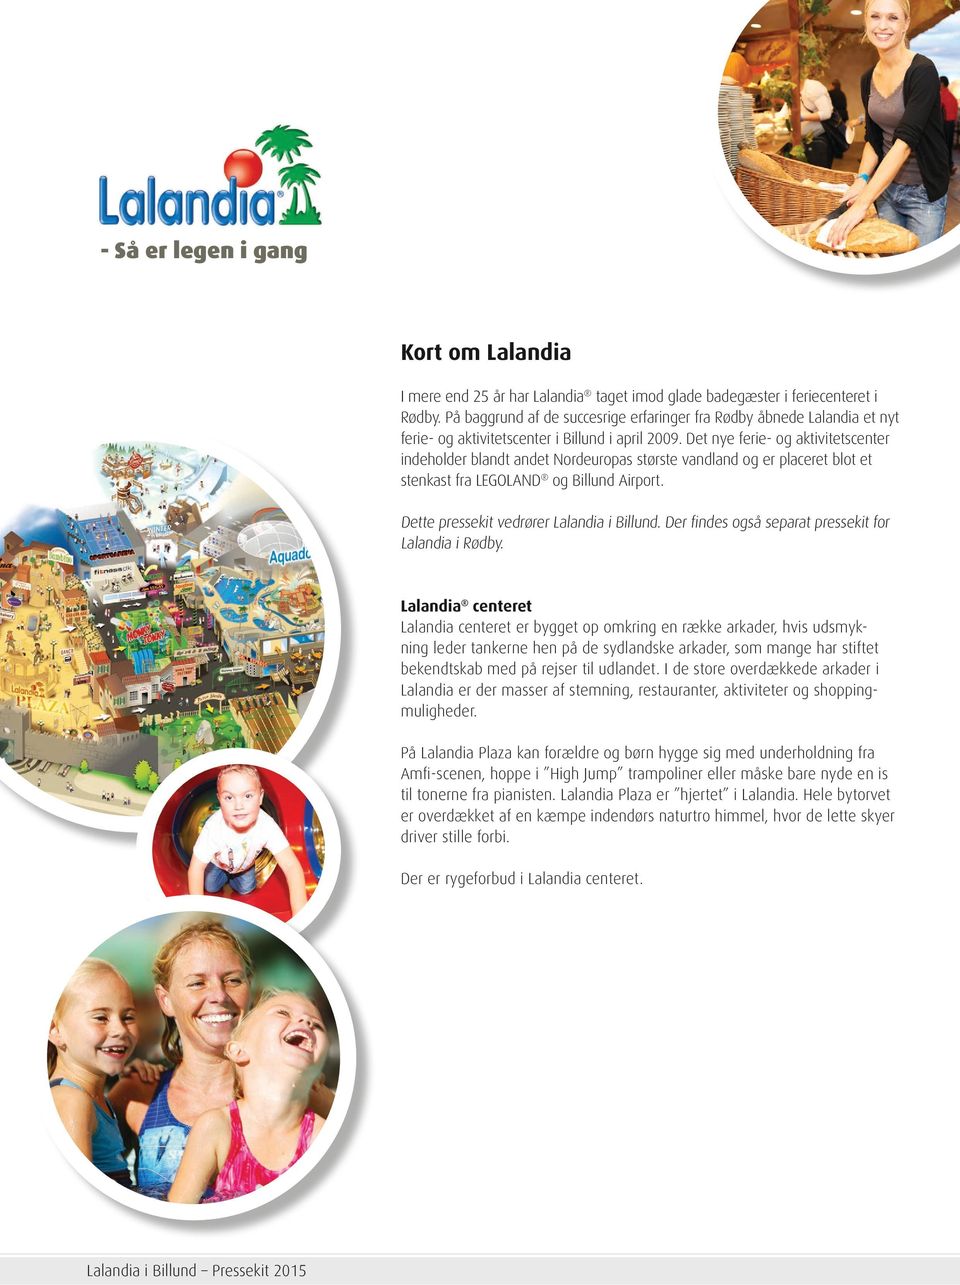 Det nye ferie- og aktivitetscenter indeholder blandt andet Nordeuropas største vandland og er placeret blot et stenkast fra LEGOLAND og Billund Airport. Dette pressekit vedrører Lalandia i Billund.